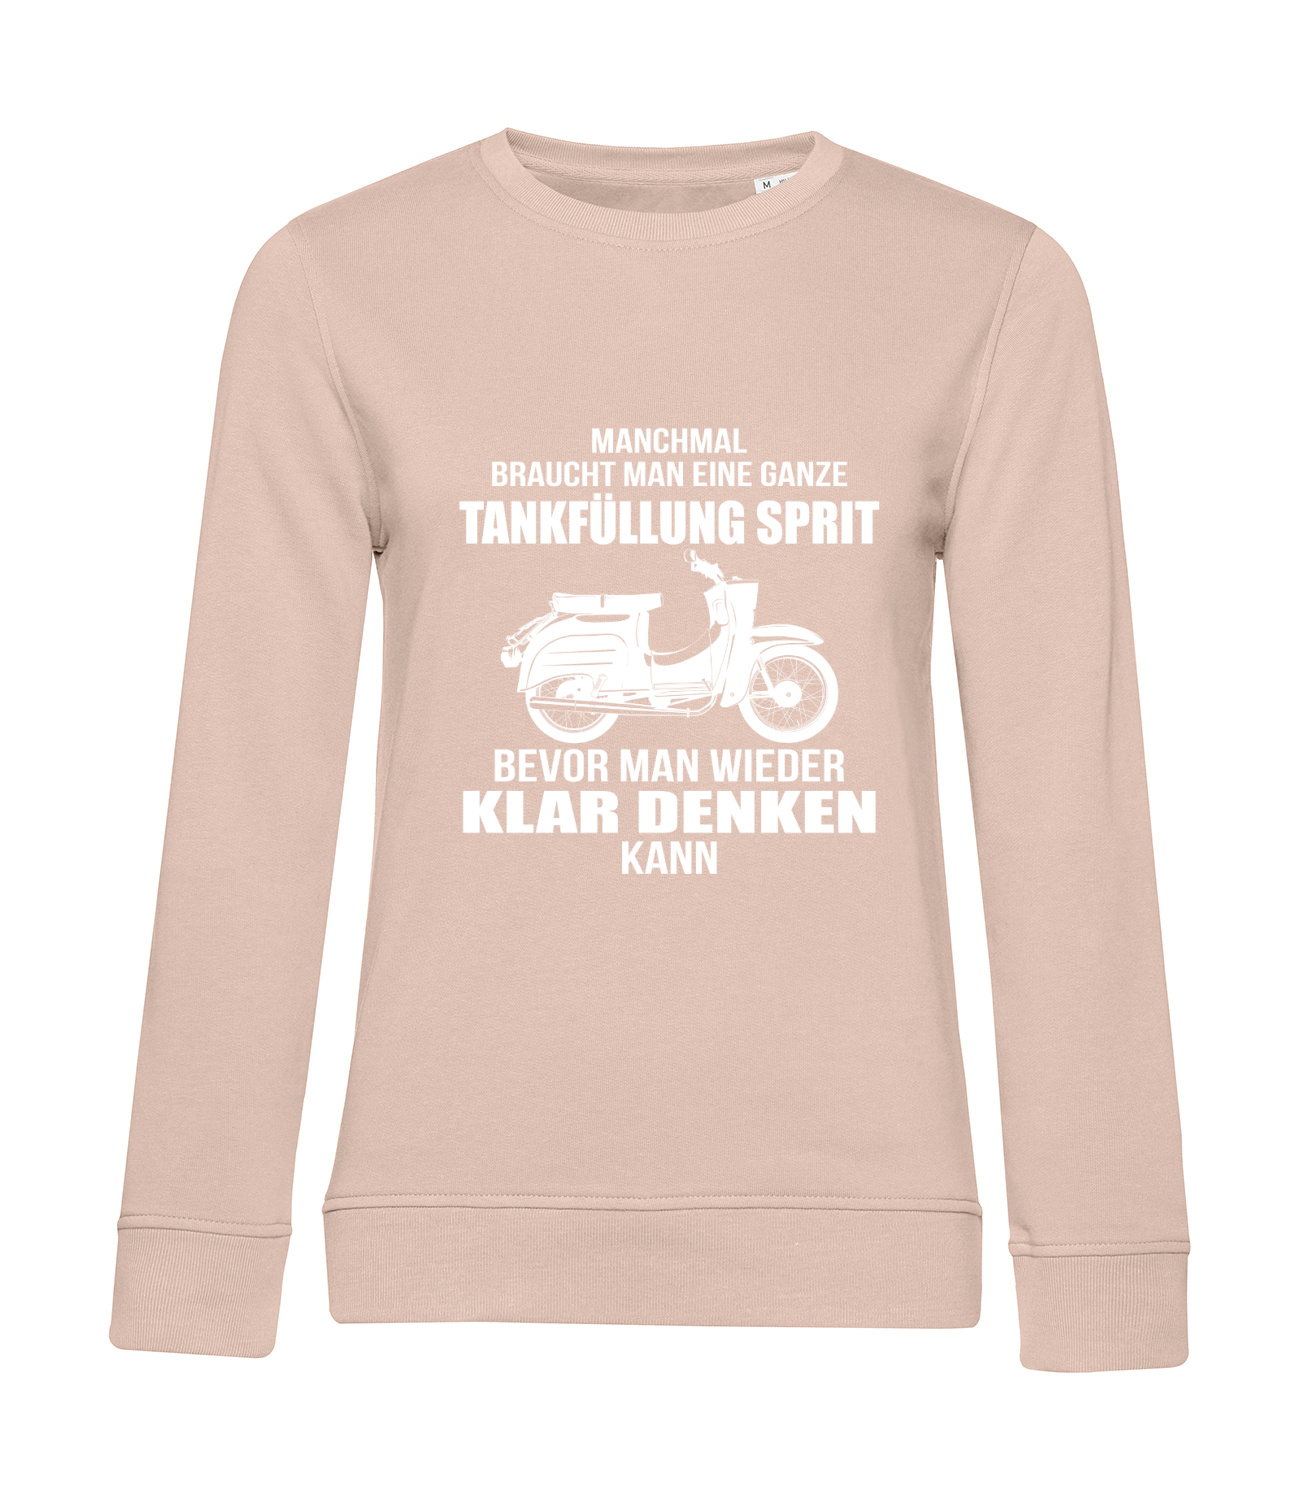 Nachhaltiges Sweatshirt Damen 2Takt - Ganze Tankfüllung Schwalbe